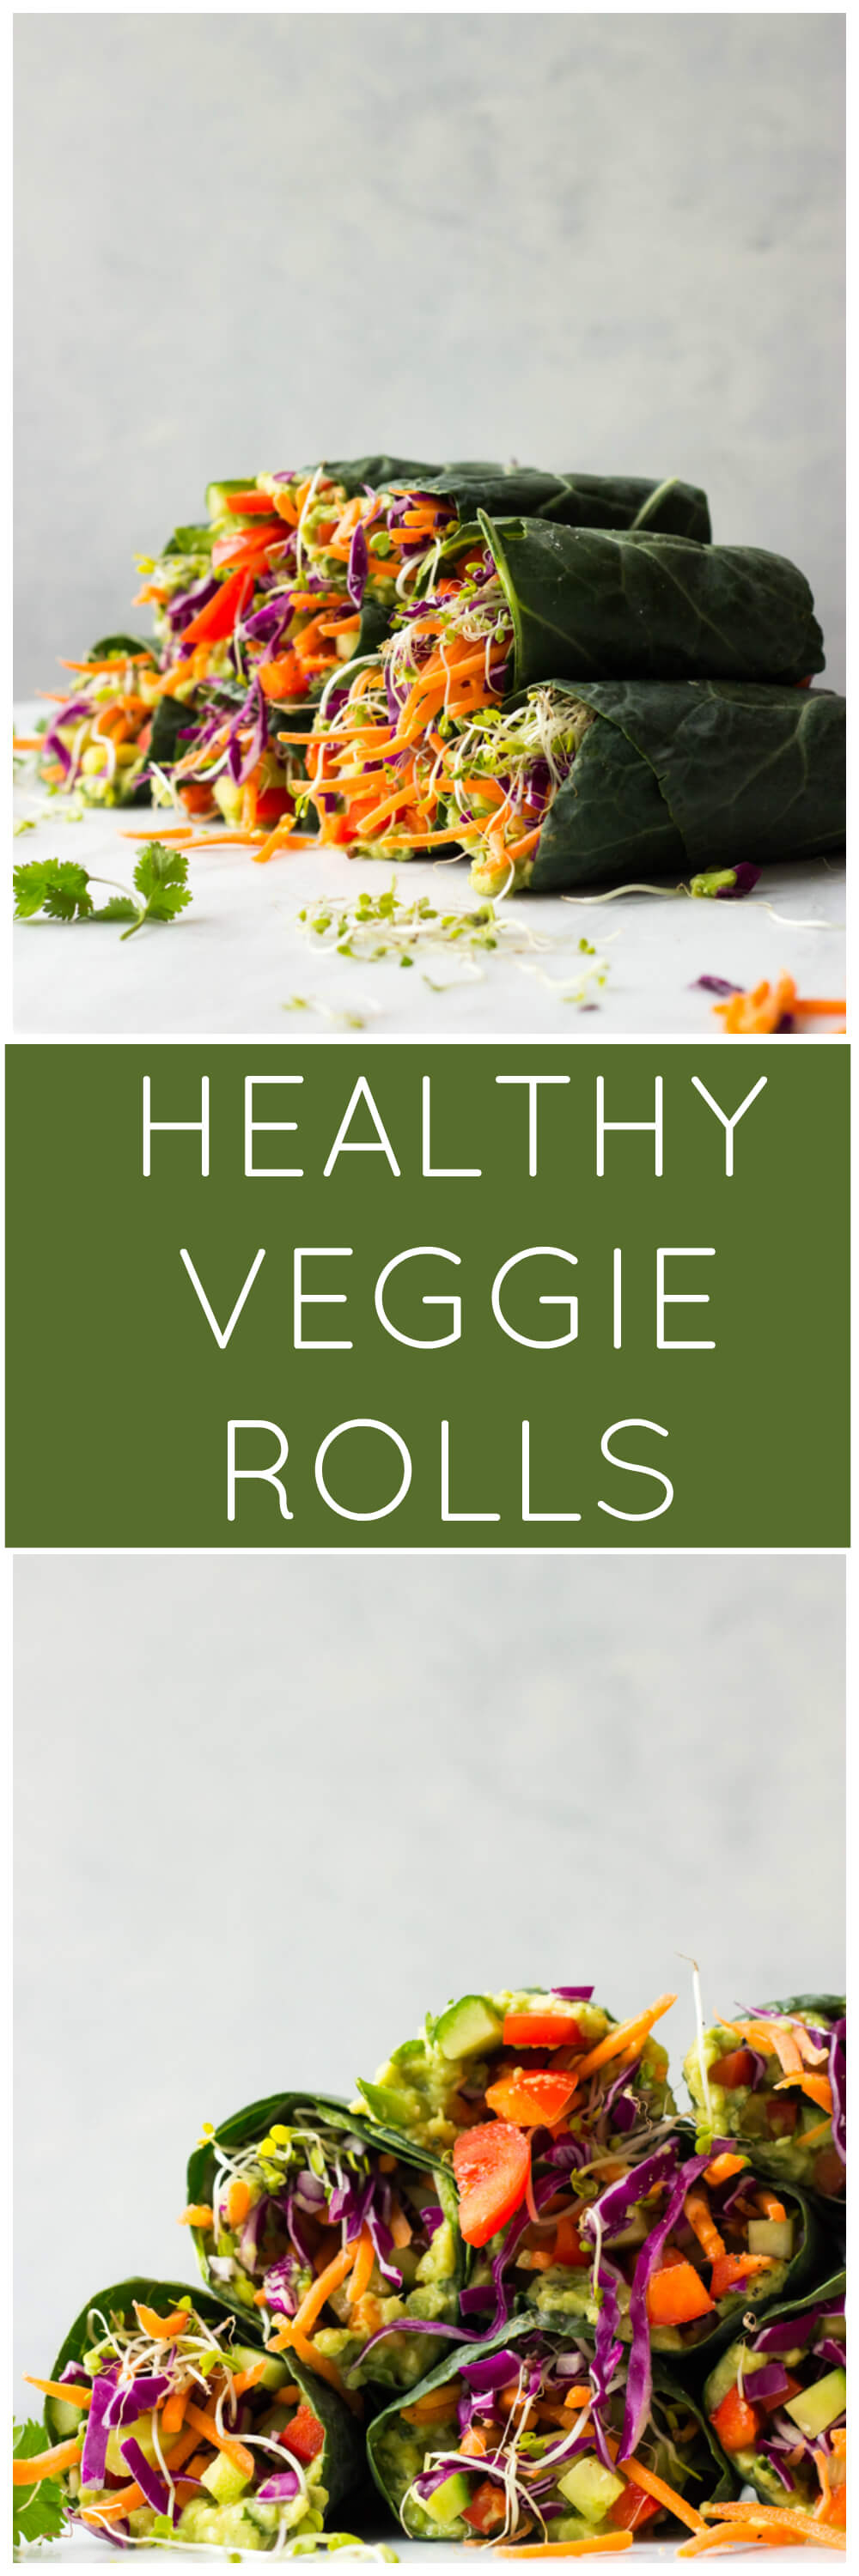 Healthy Veggie Rolls - vegan, vegetarian and completely raw! | littlebroken.com @littlebroken